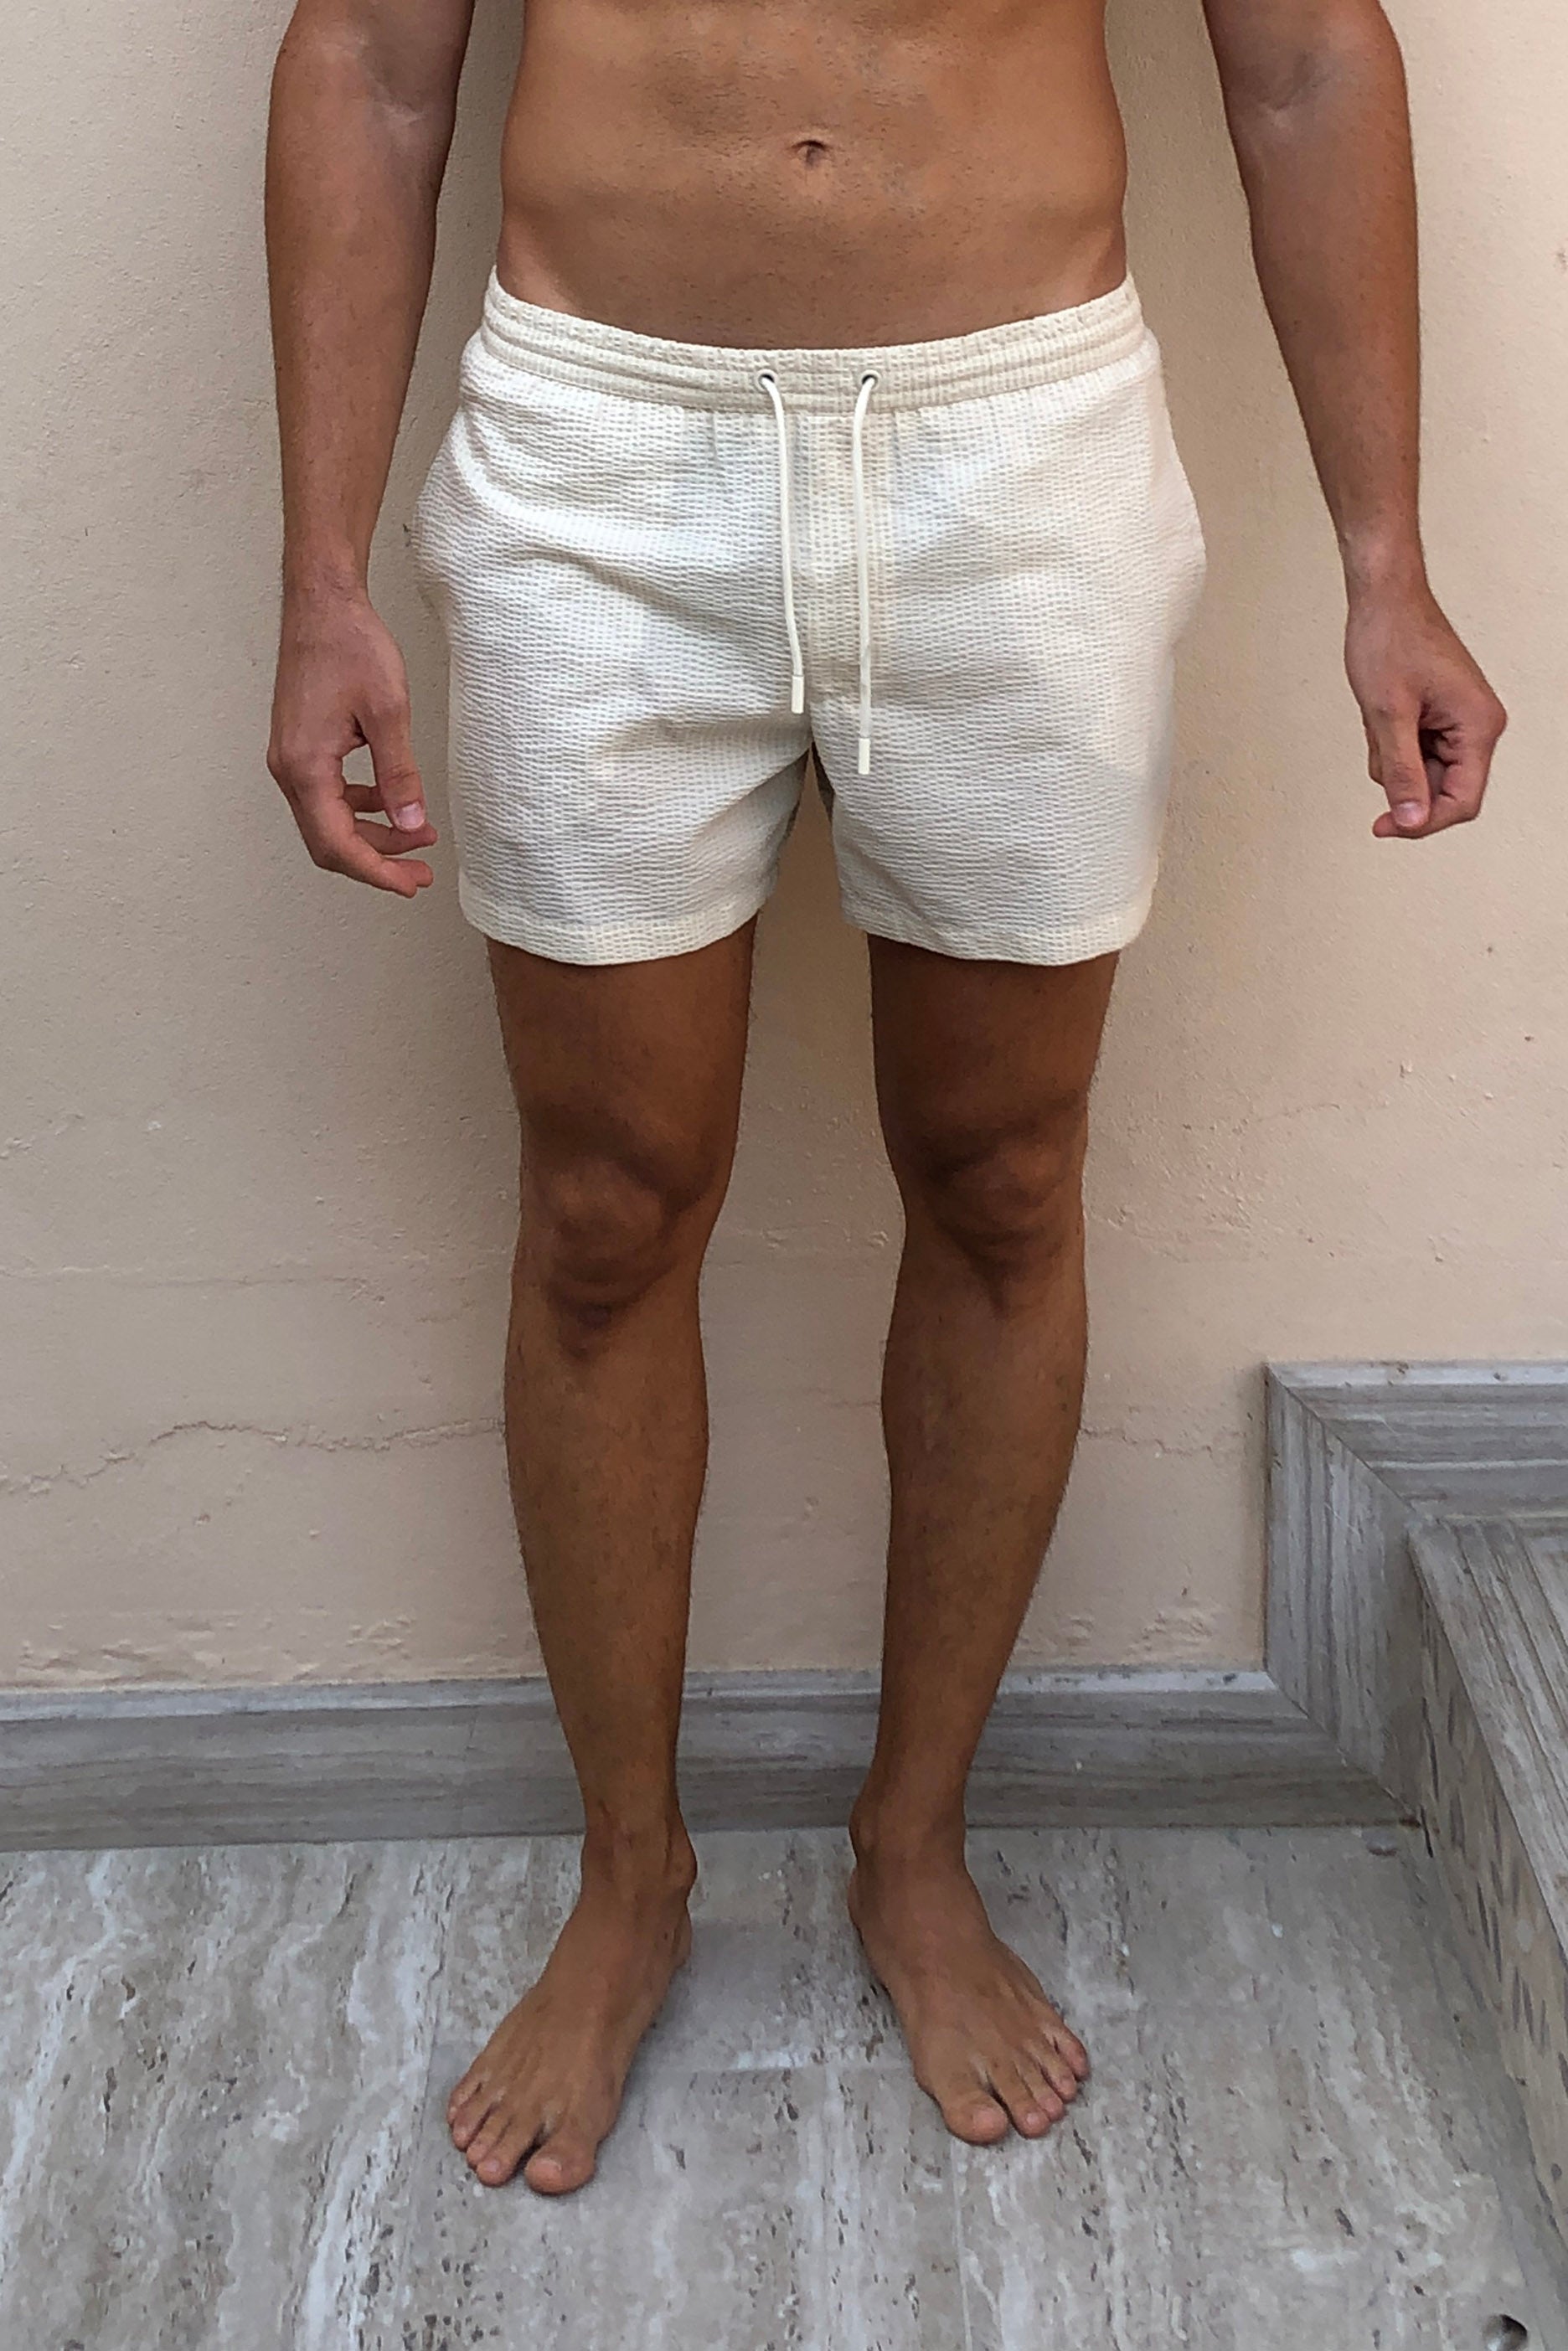 Cream Seersucker Drawstring Shorts (Medium)